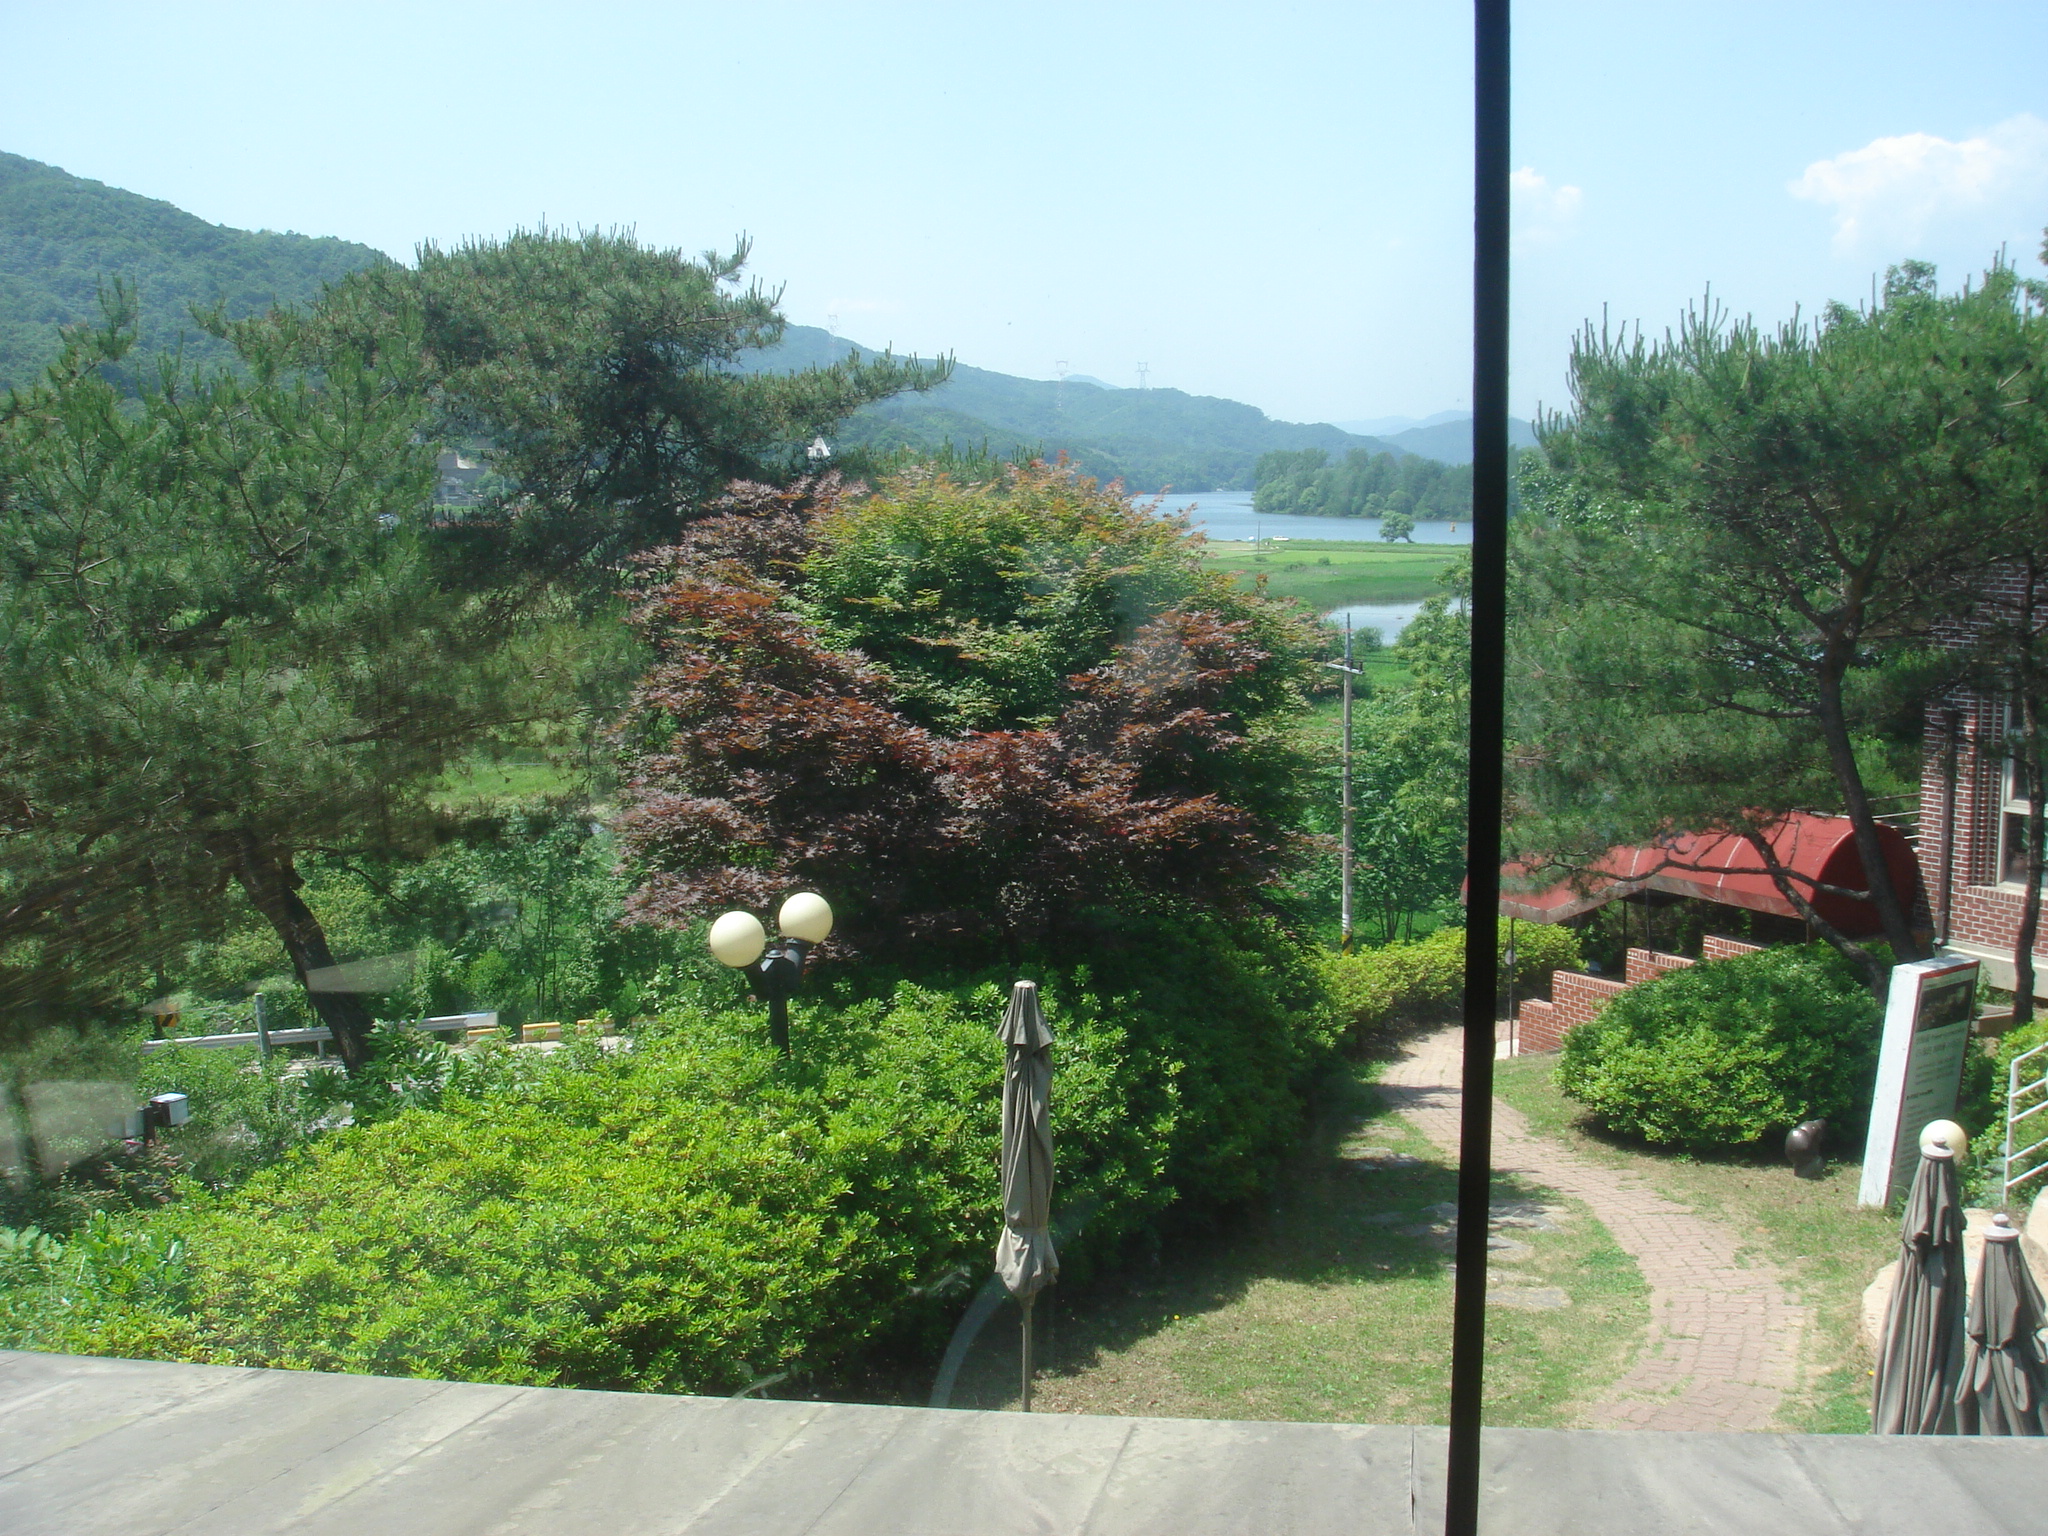 바탕골 예술회관 1000원 찻집(무인 셀프 찻집)에서 바라본 남한강